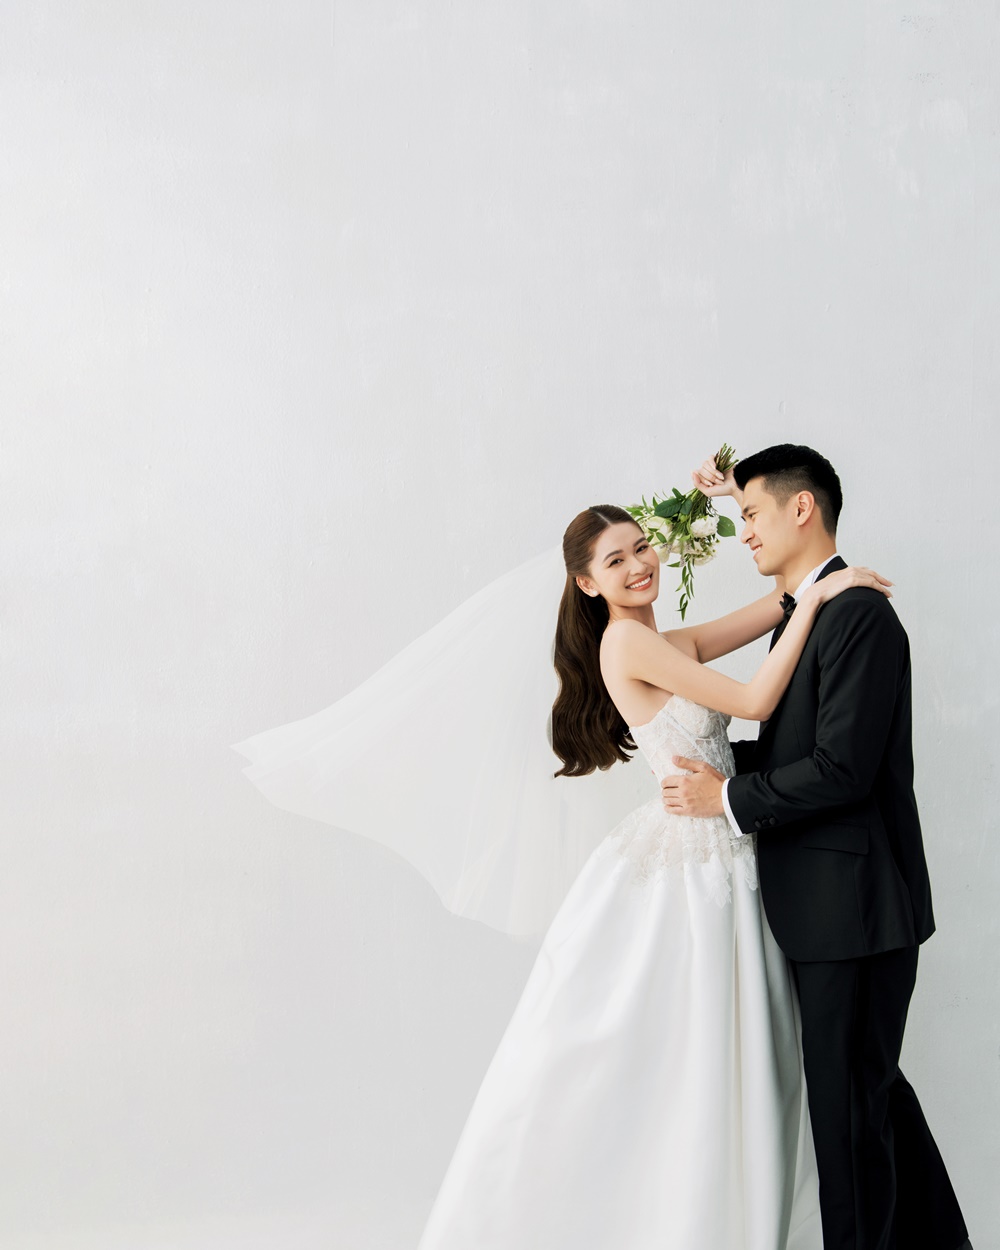 Ảnh cưới ngọt ngào của Á hậu Thùy Dung và ông xã doanh nhân - Ảnh 3.